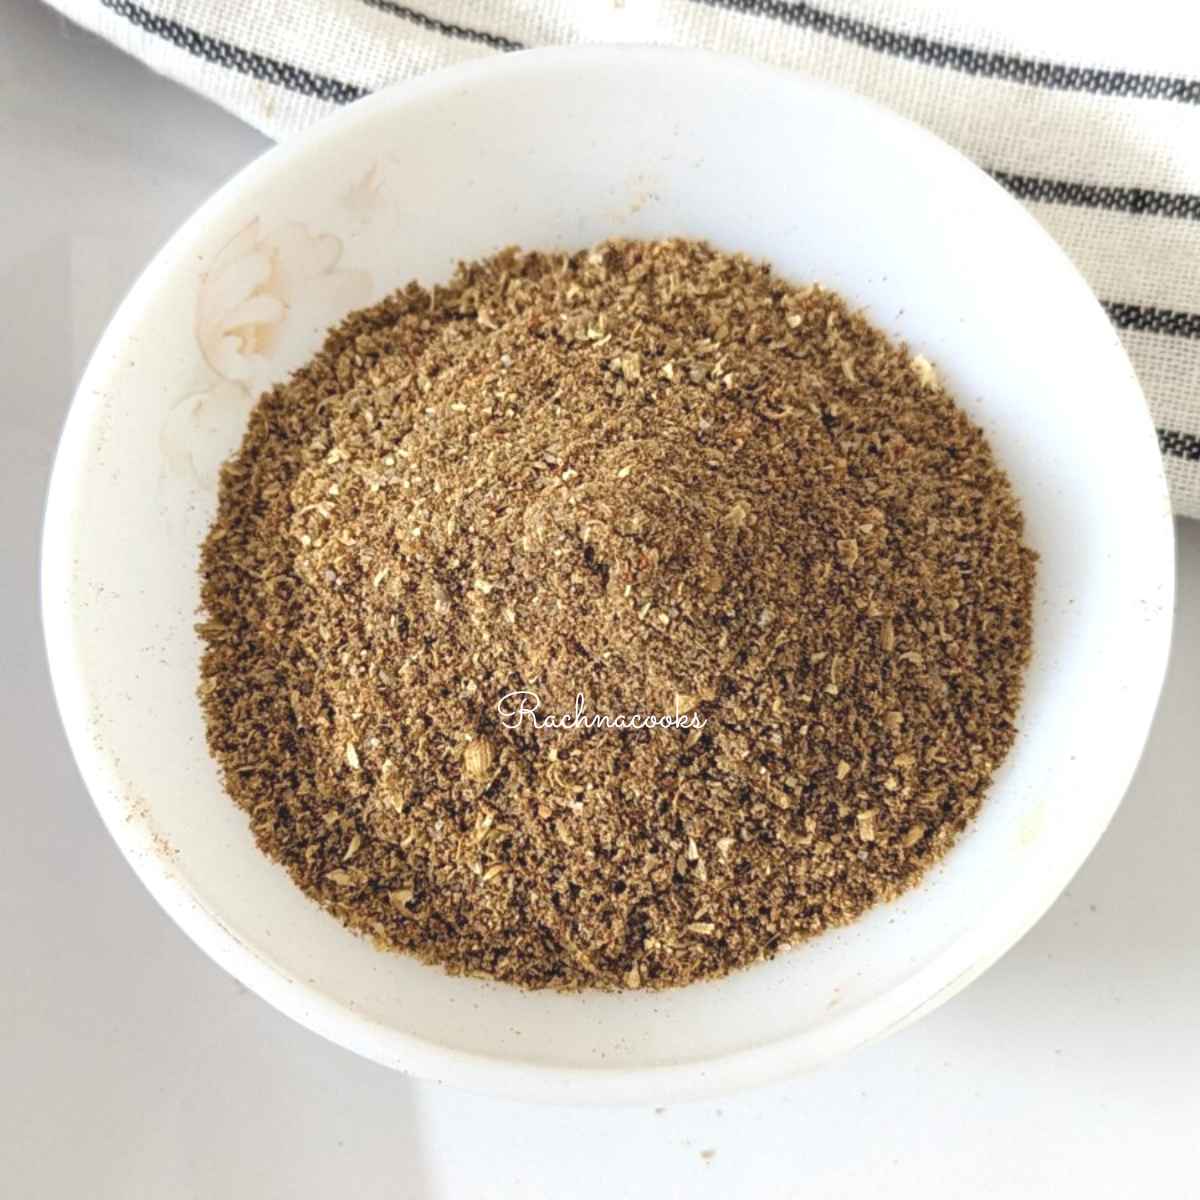 A bowl of homemade chaat masala powder.